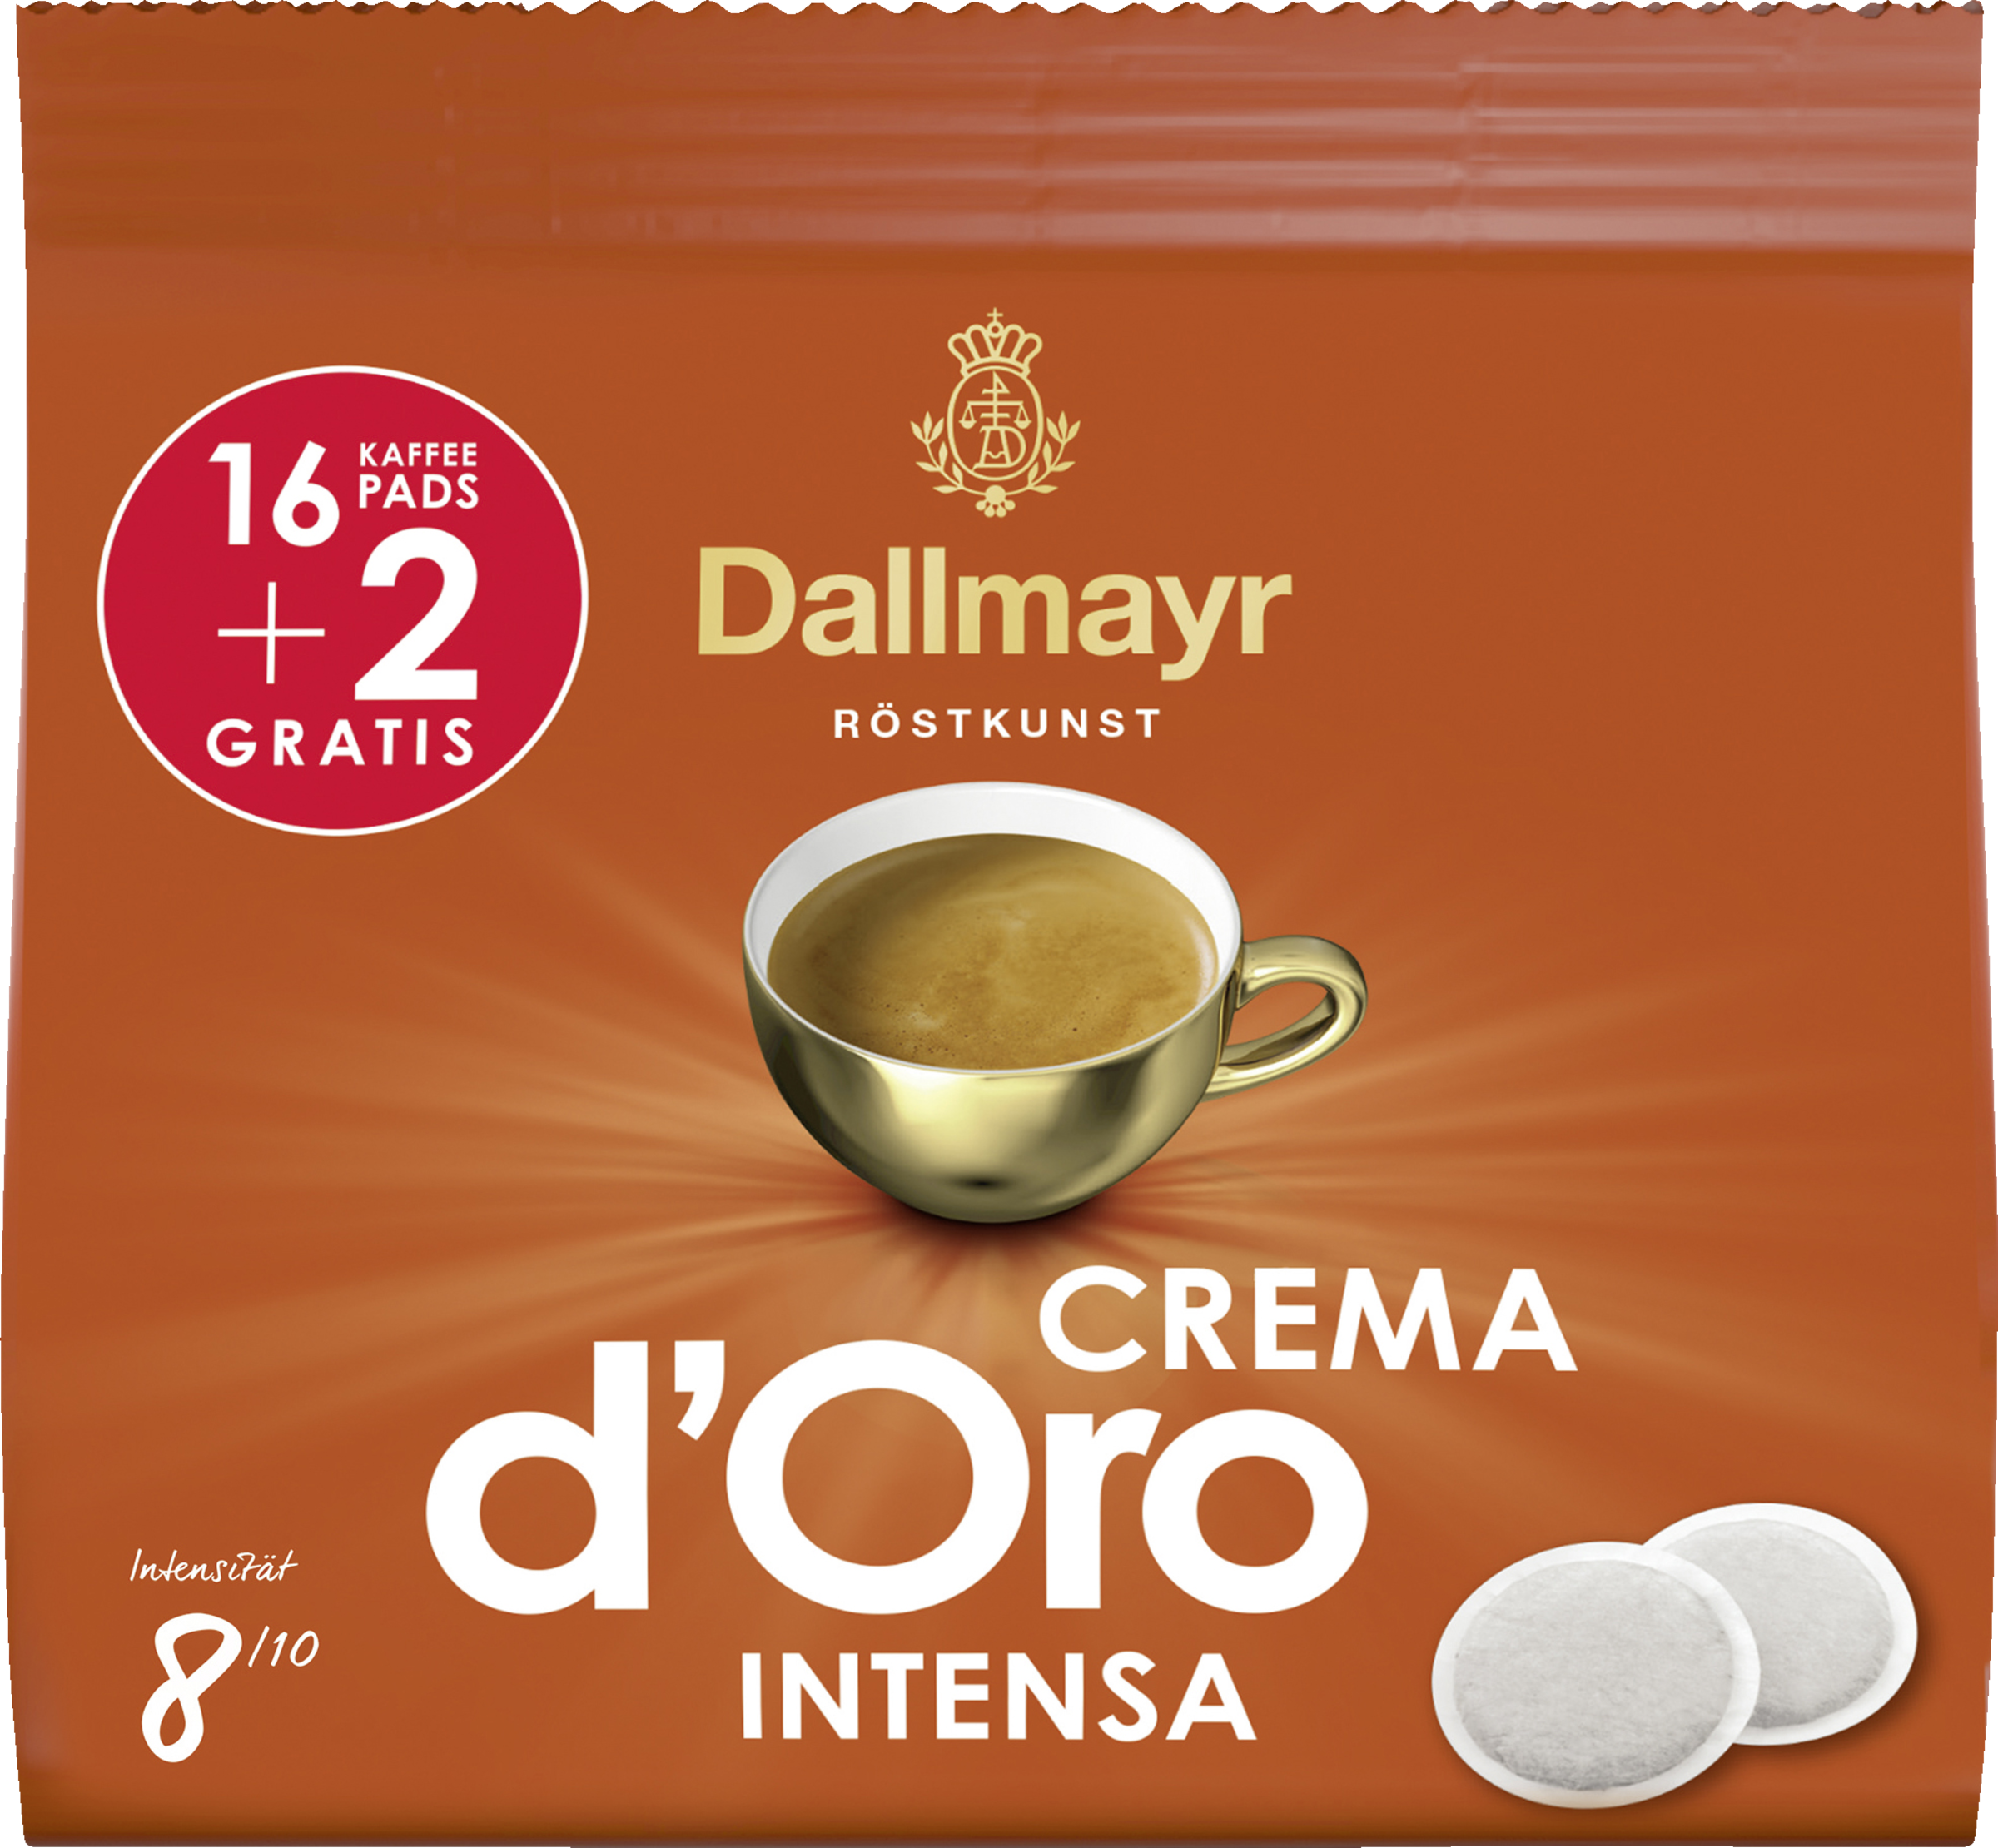 Crema doro Intensa coffee pods